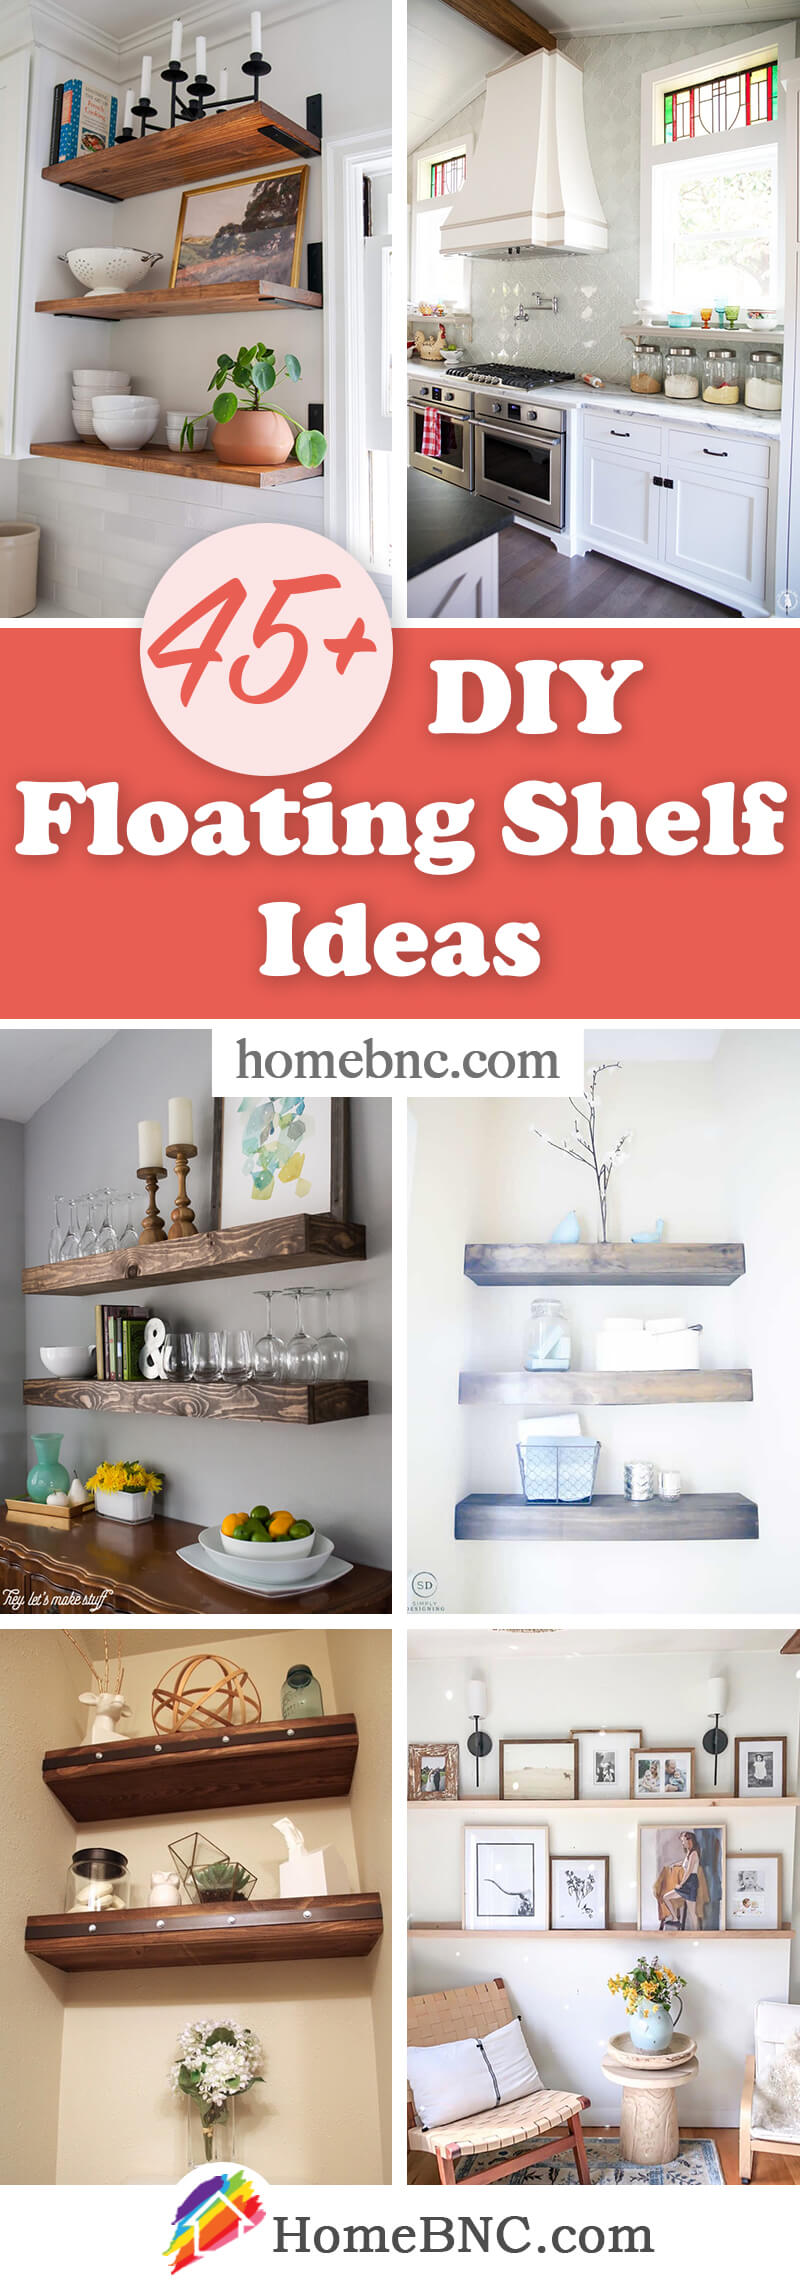 DIY Floating Shelf Ideas